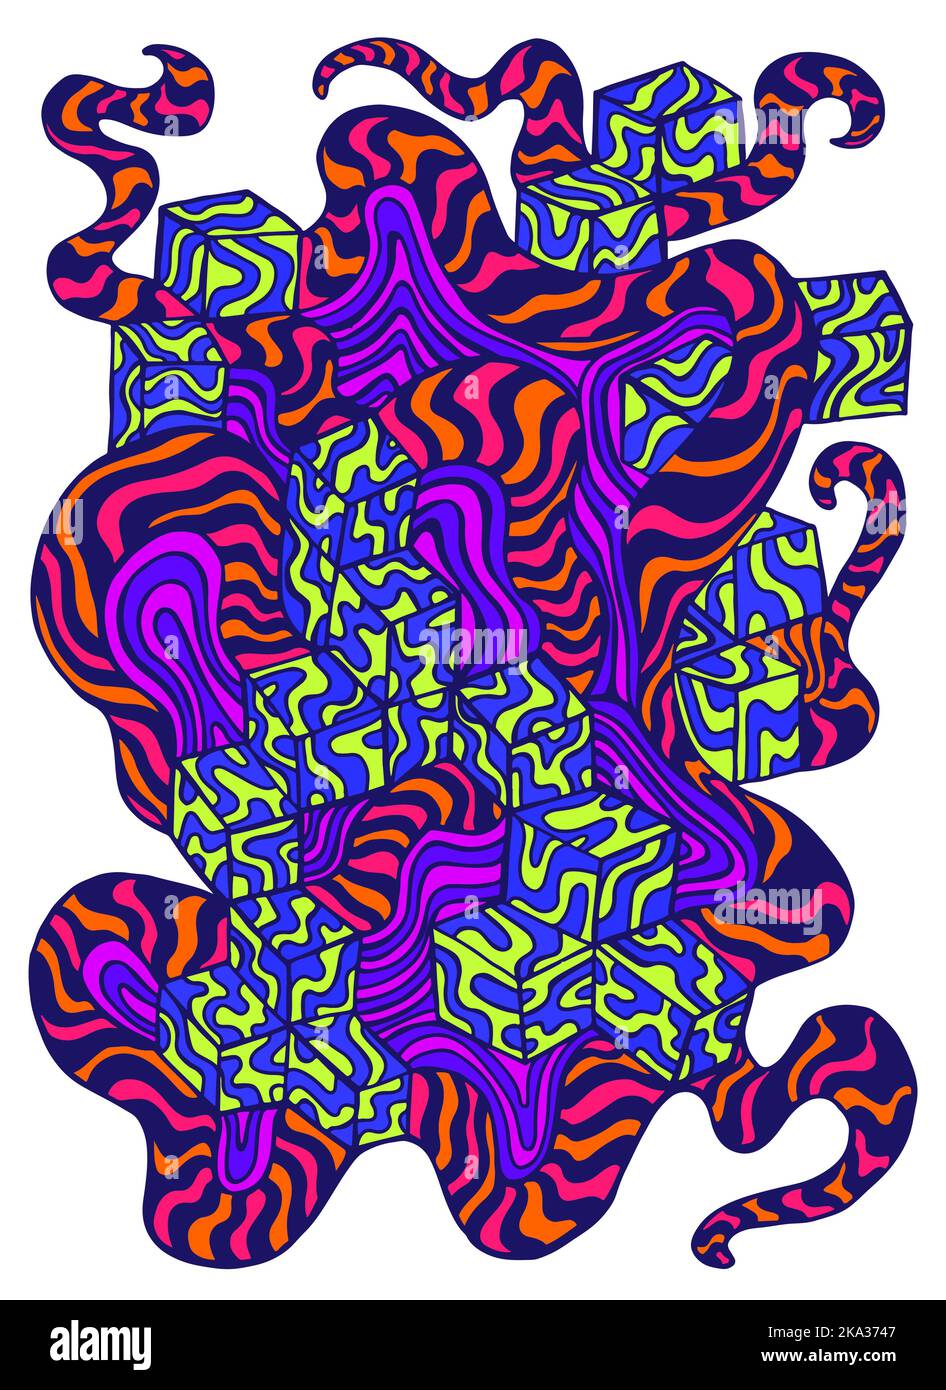 Dessin animé psychédélique de style doodle avec beaucoup d'ornement coloré. Motif isolé. Décoration abstraite amusante pour t-shirt design, placide, carte Illustration de Vecteur